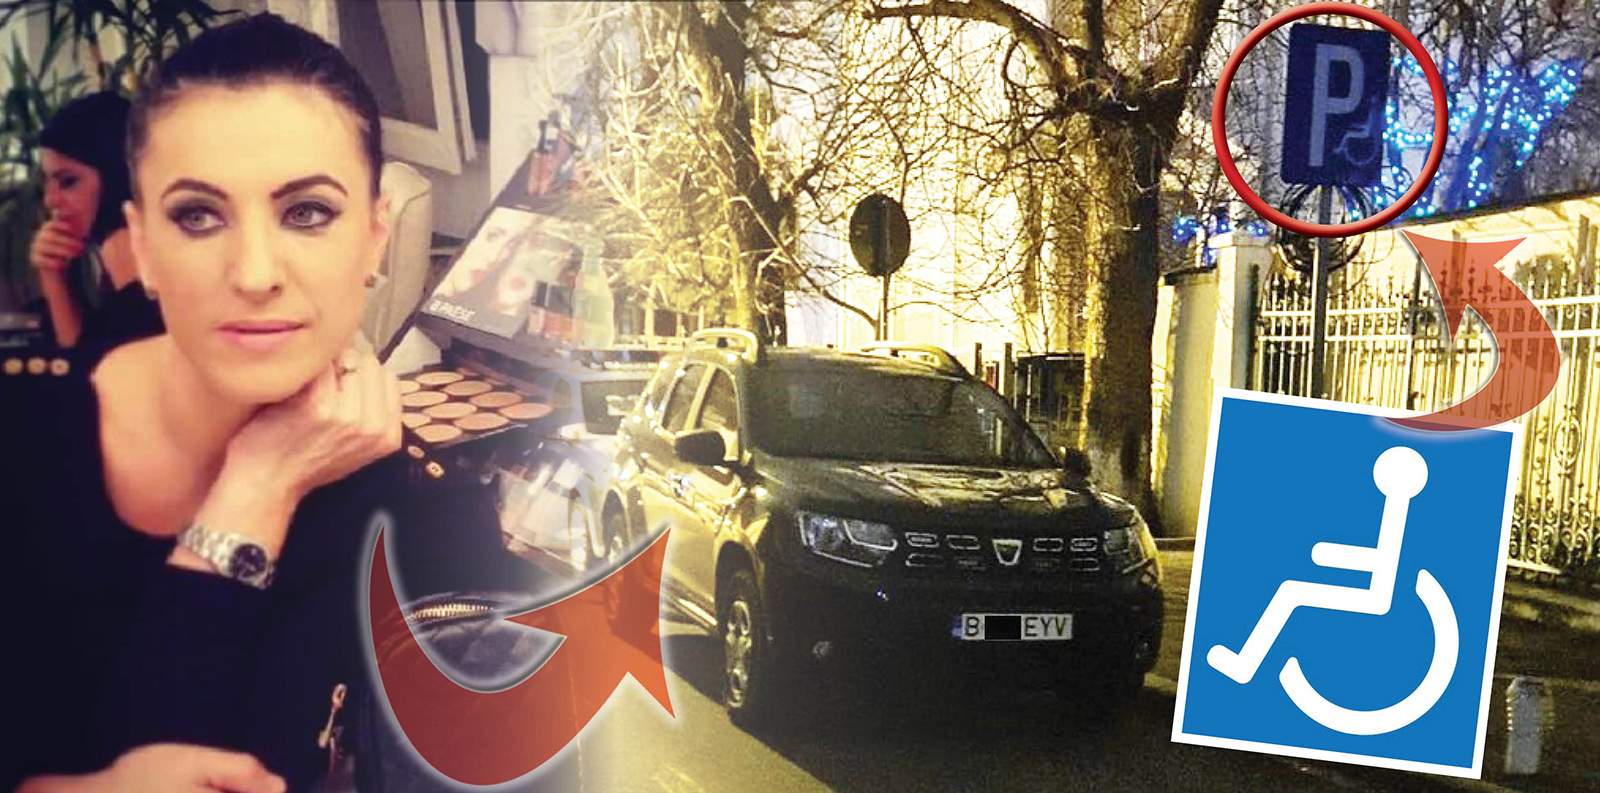 Anchetă internă la Poliție după ce mașina șefei de la Rutieră a fost parcată pe locul rezervat persoanelor cu handicap / Detalii exclusive